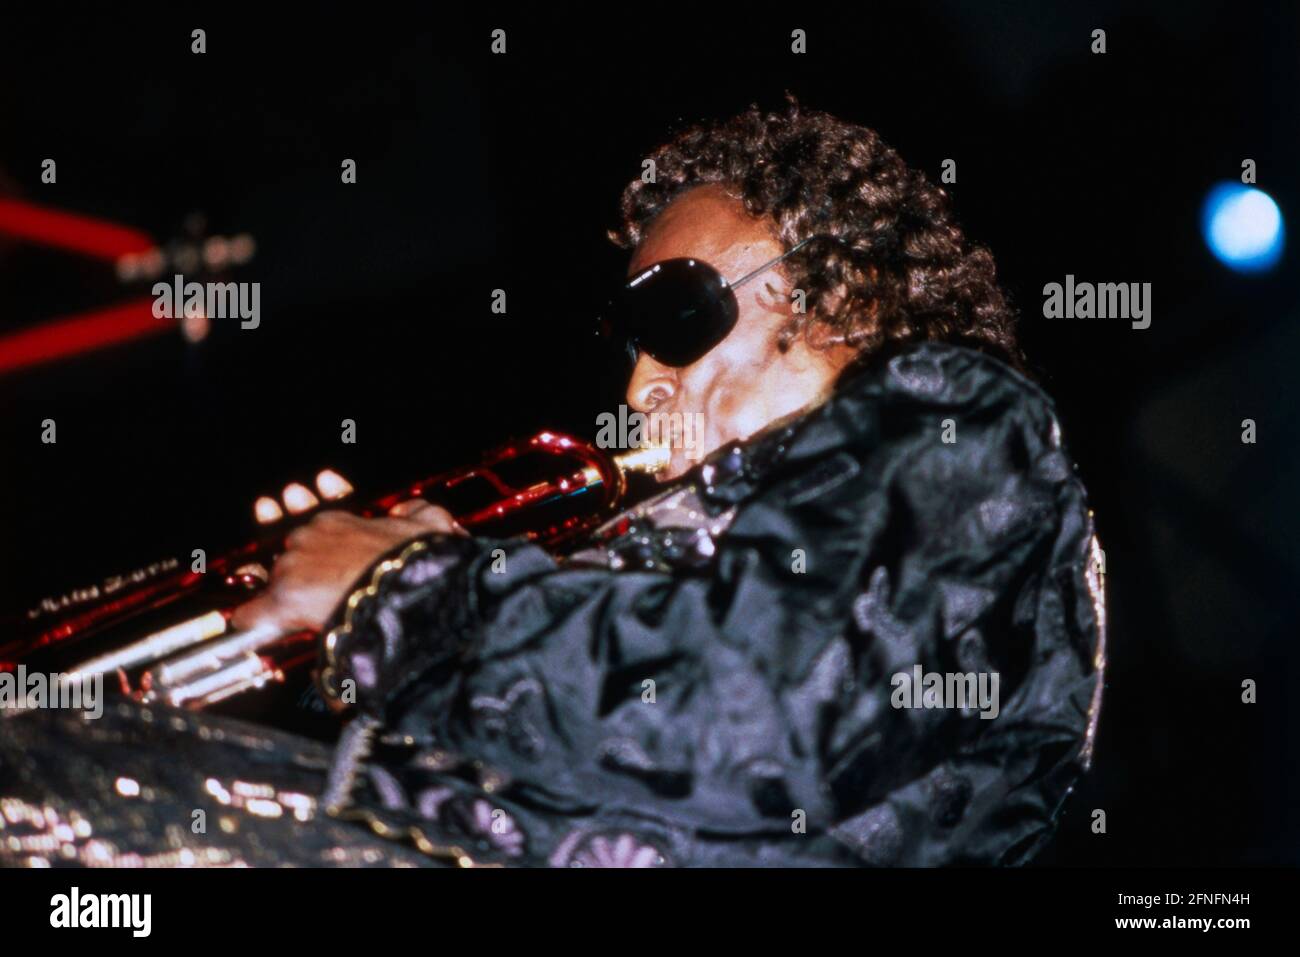 Miles Davis, amerikanischer Jazztrompeter, Flügelhornist, Komponist und Bandleader, 1989. Miles Davis, American Jazz trumpet player, Flugelhorn player, composer and bandleader, 1989. Stock Photo